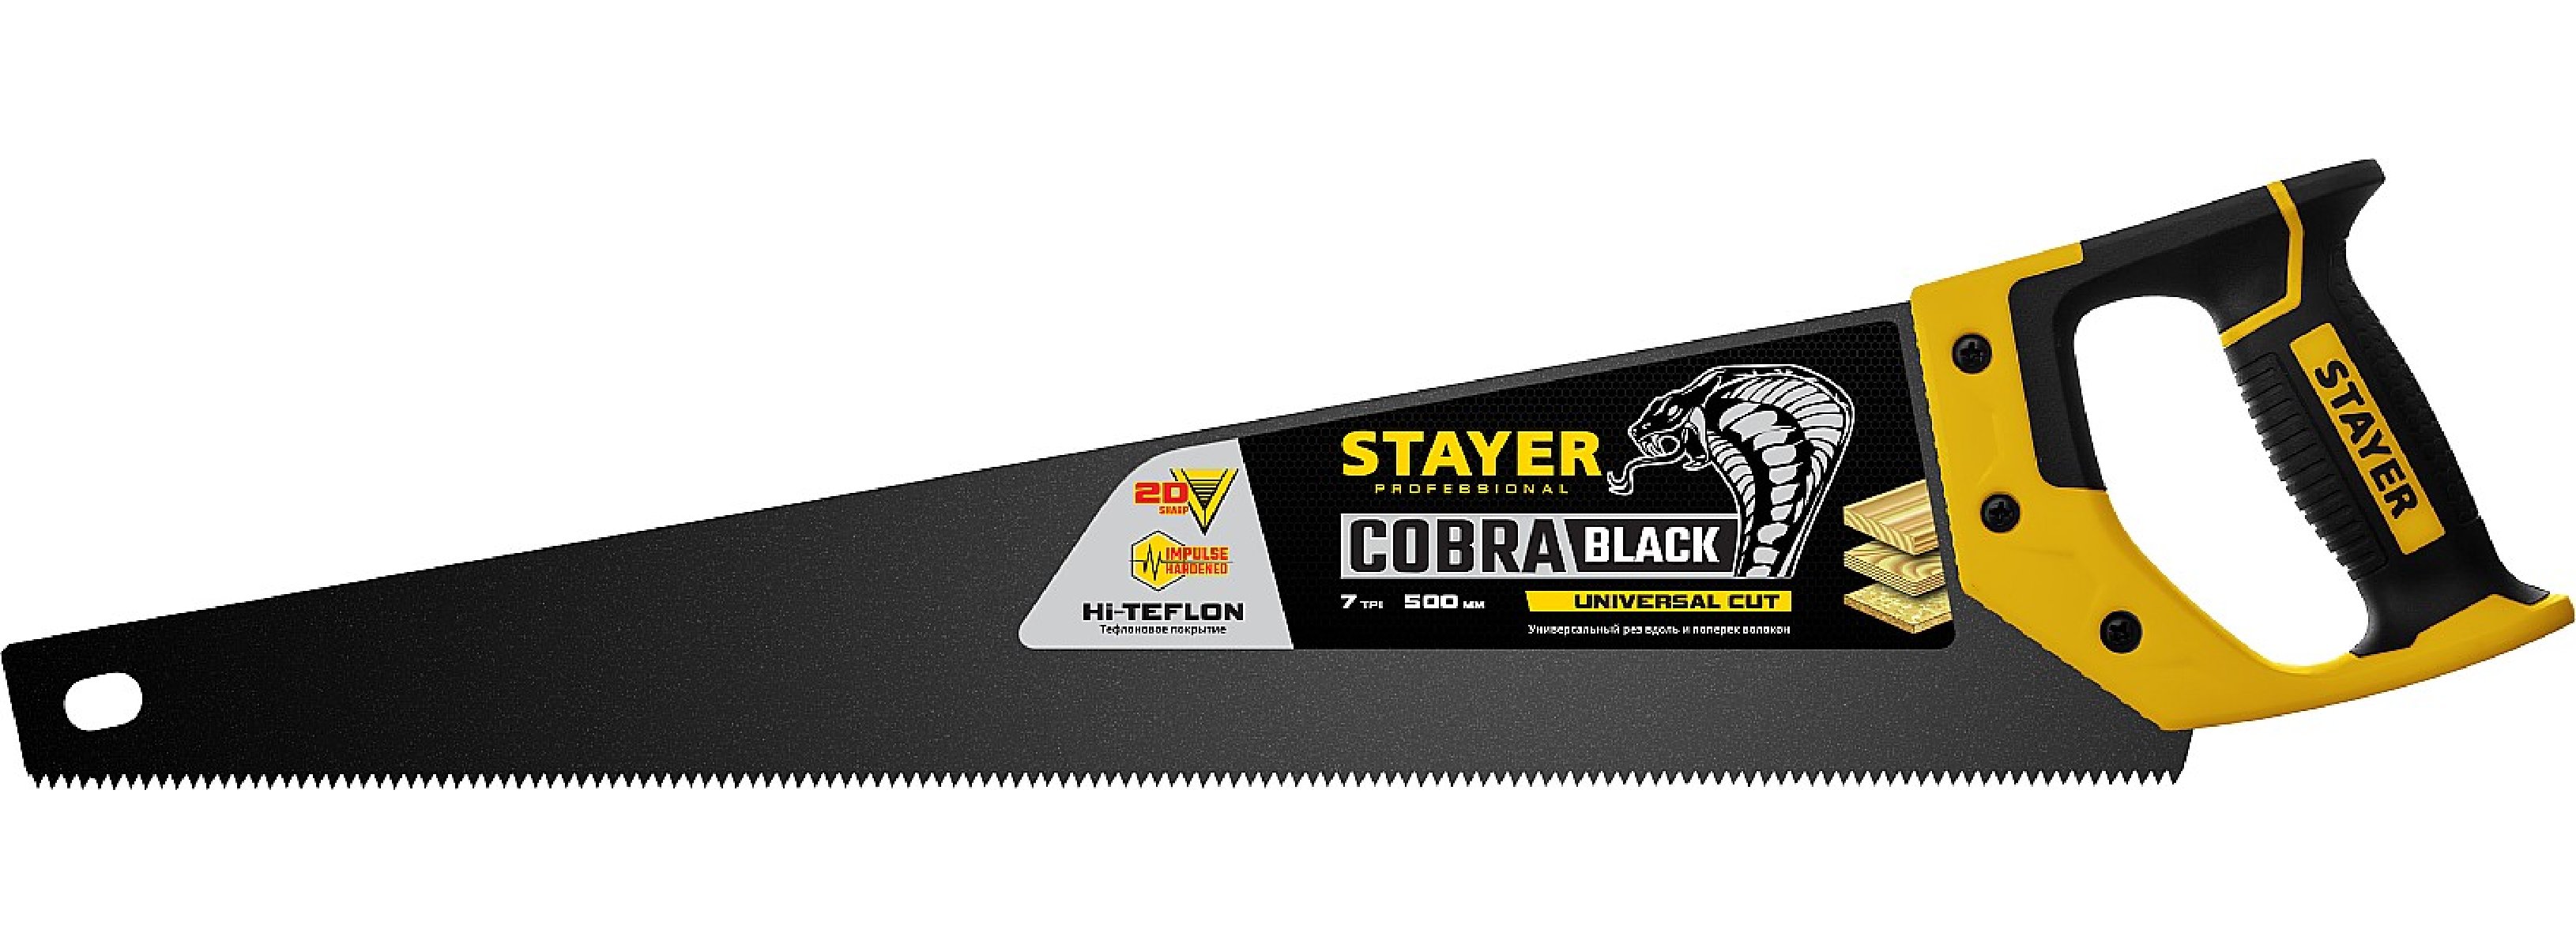   STAYER Cobra Black 500  (2-15081-50_z01)